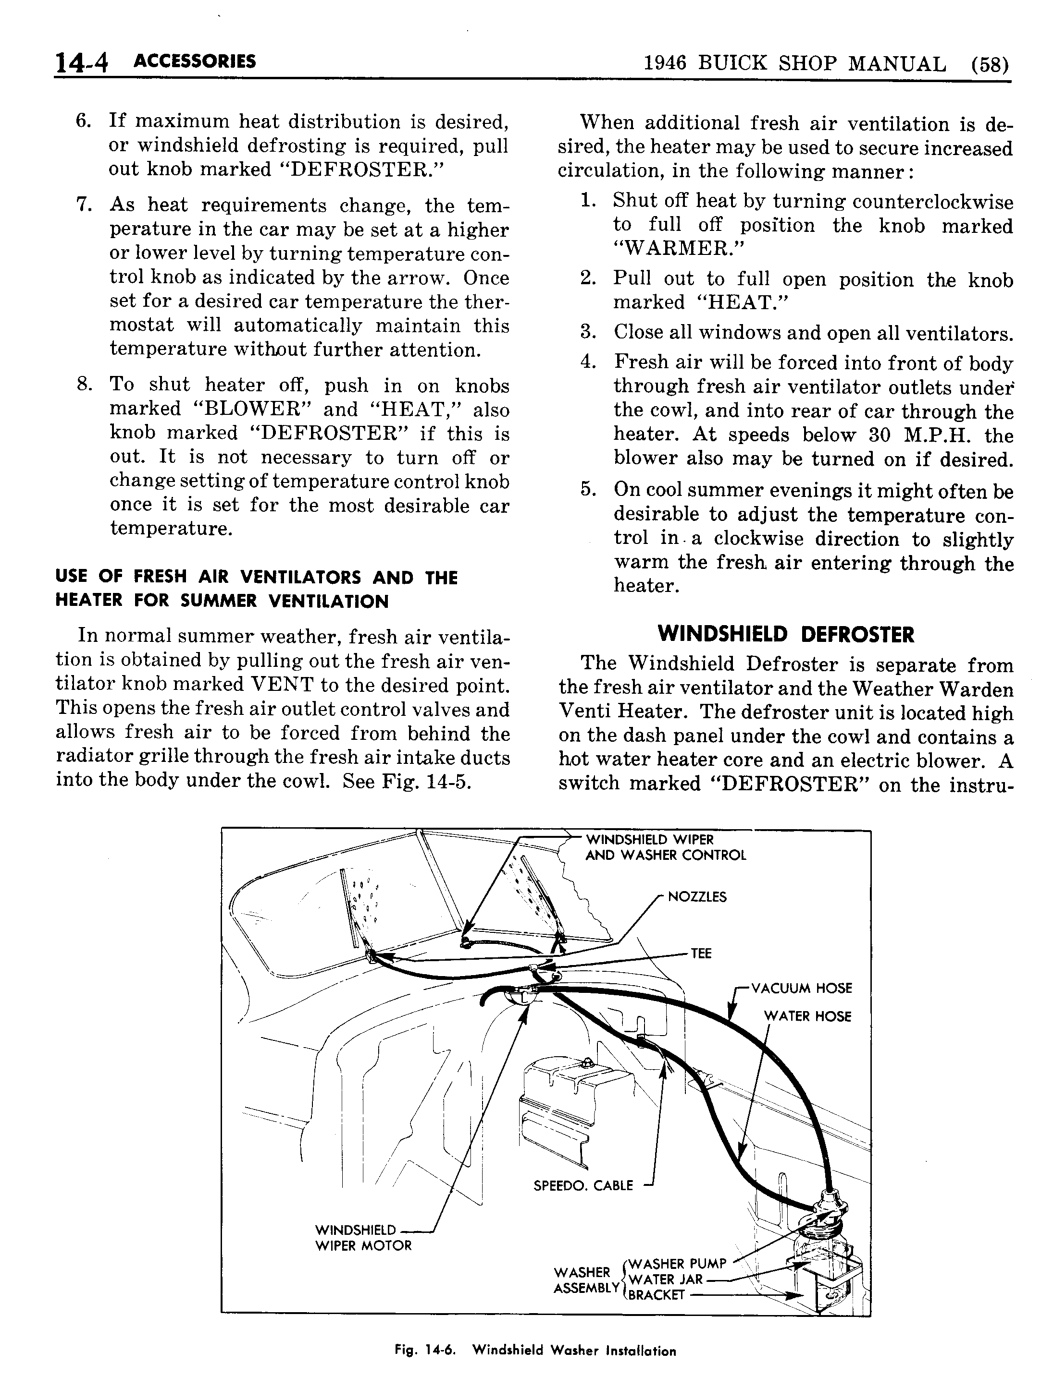 n_13 1946 Buick Shop Manual - Accessories-004-004.jpg